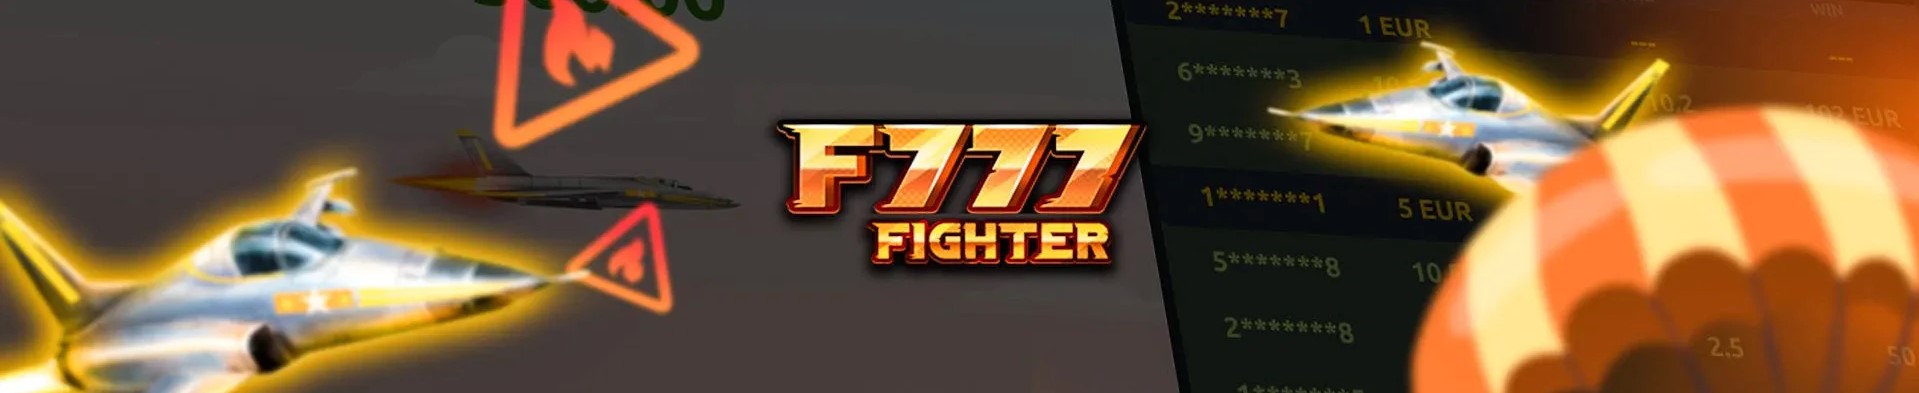 F777 fighter గేమ్.